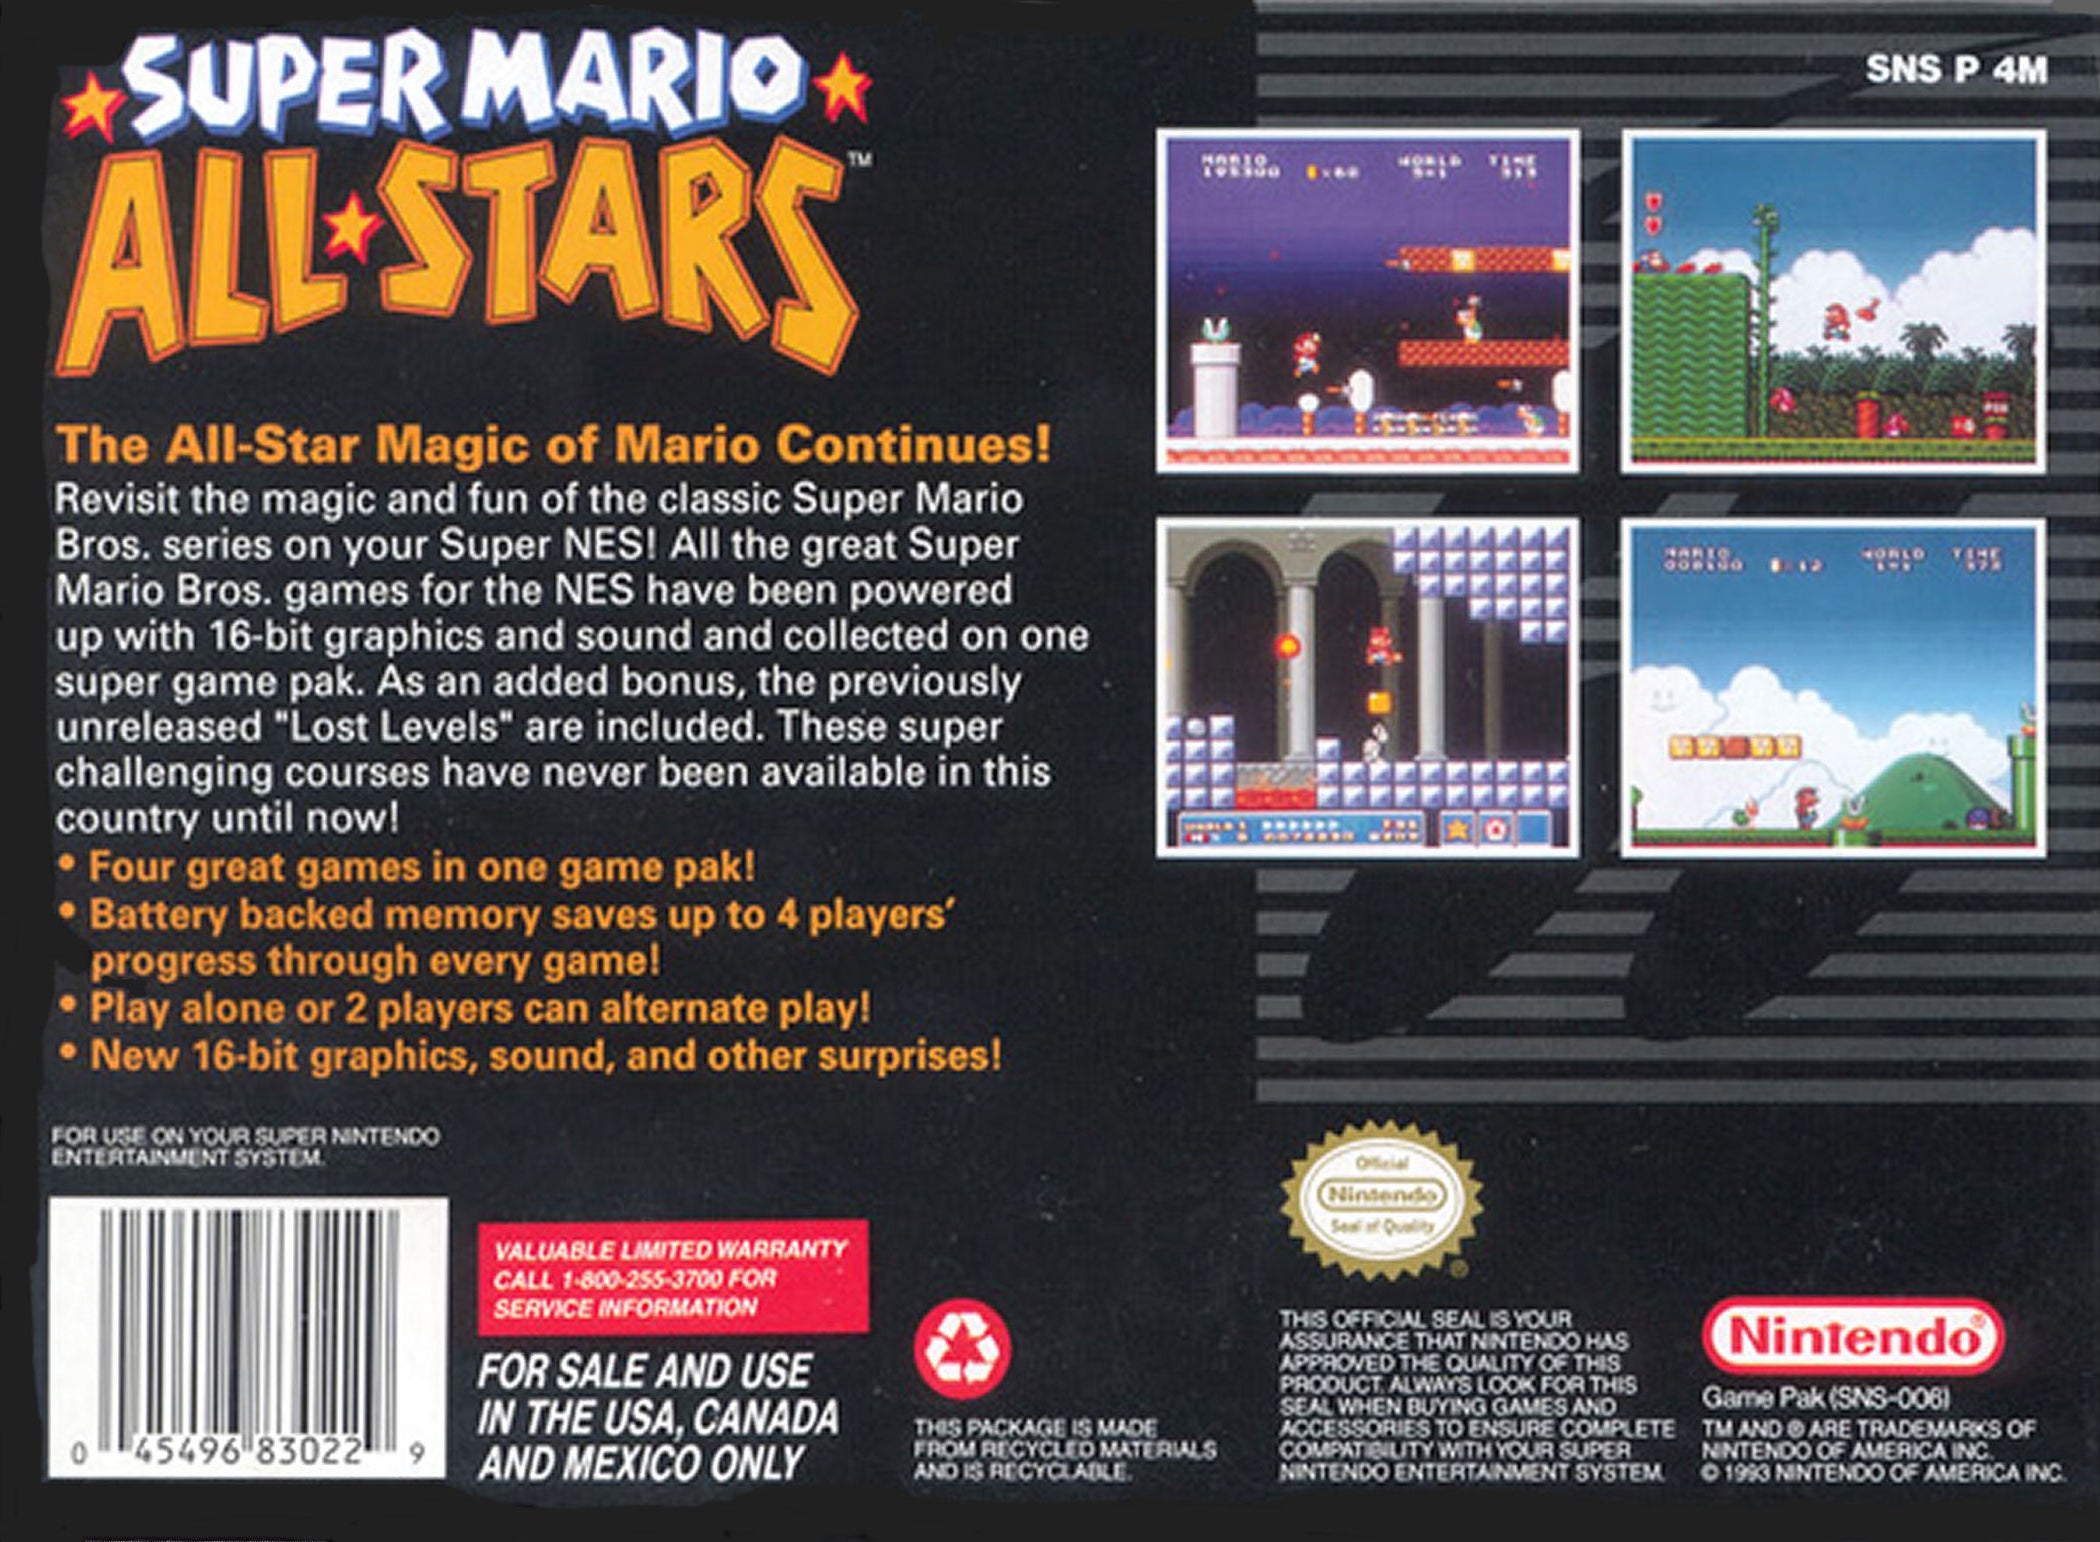 Super Mario All-Stars - Super Nintendo (SNES) Game Cartridge